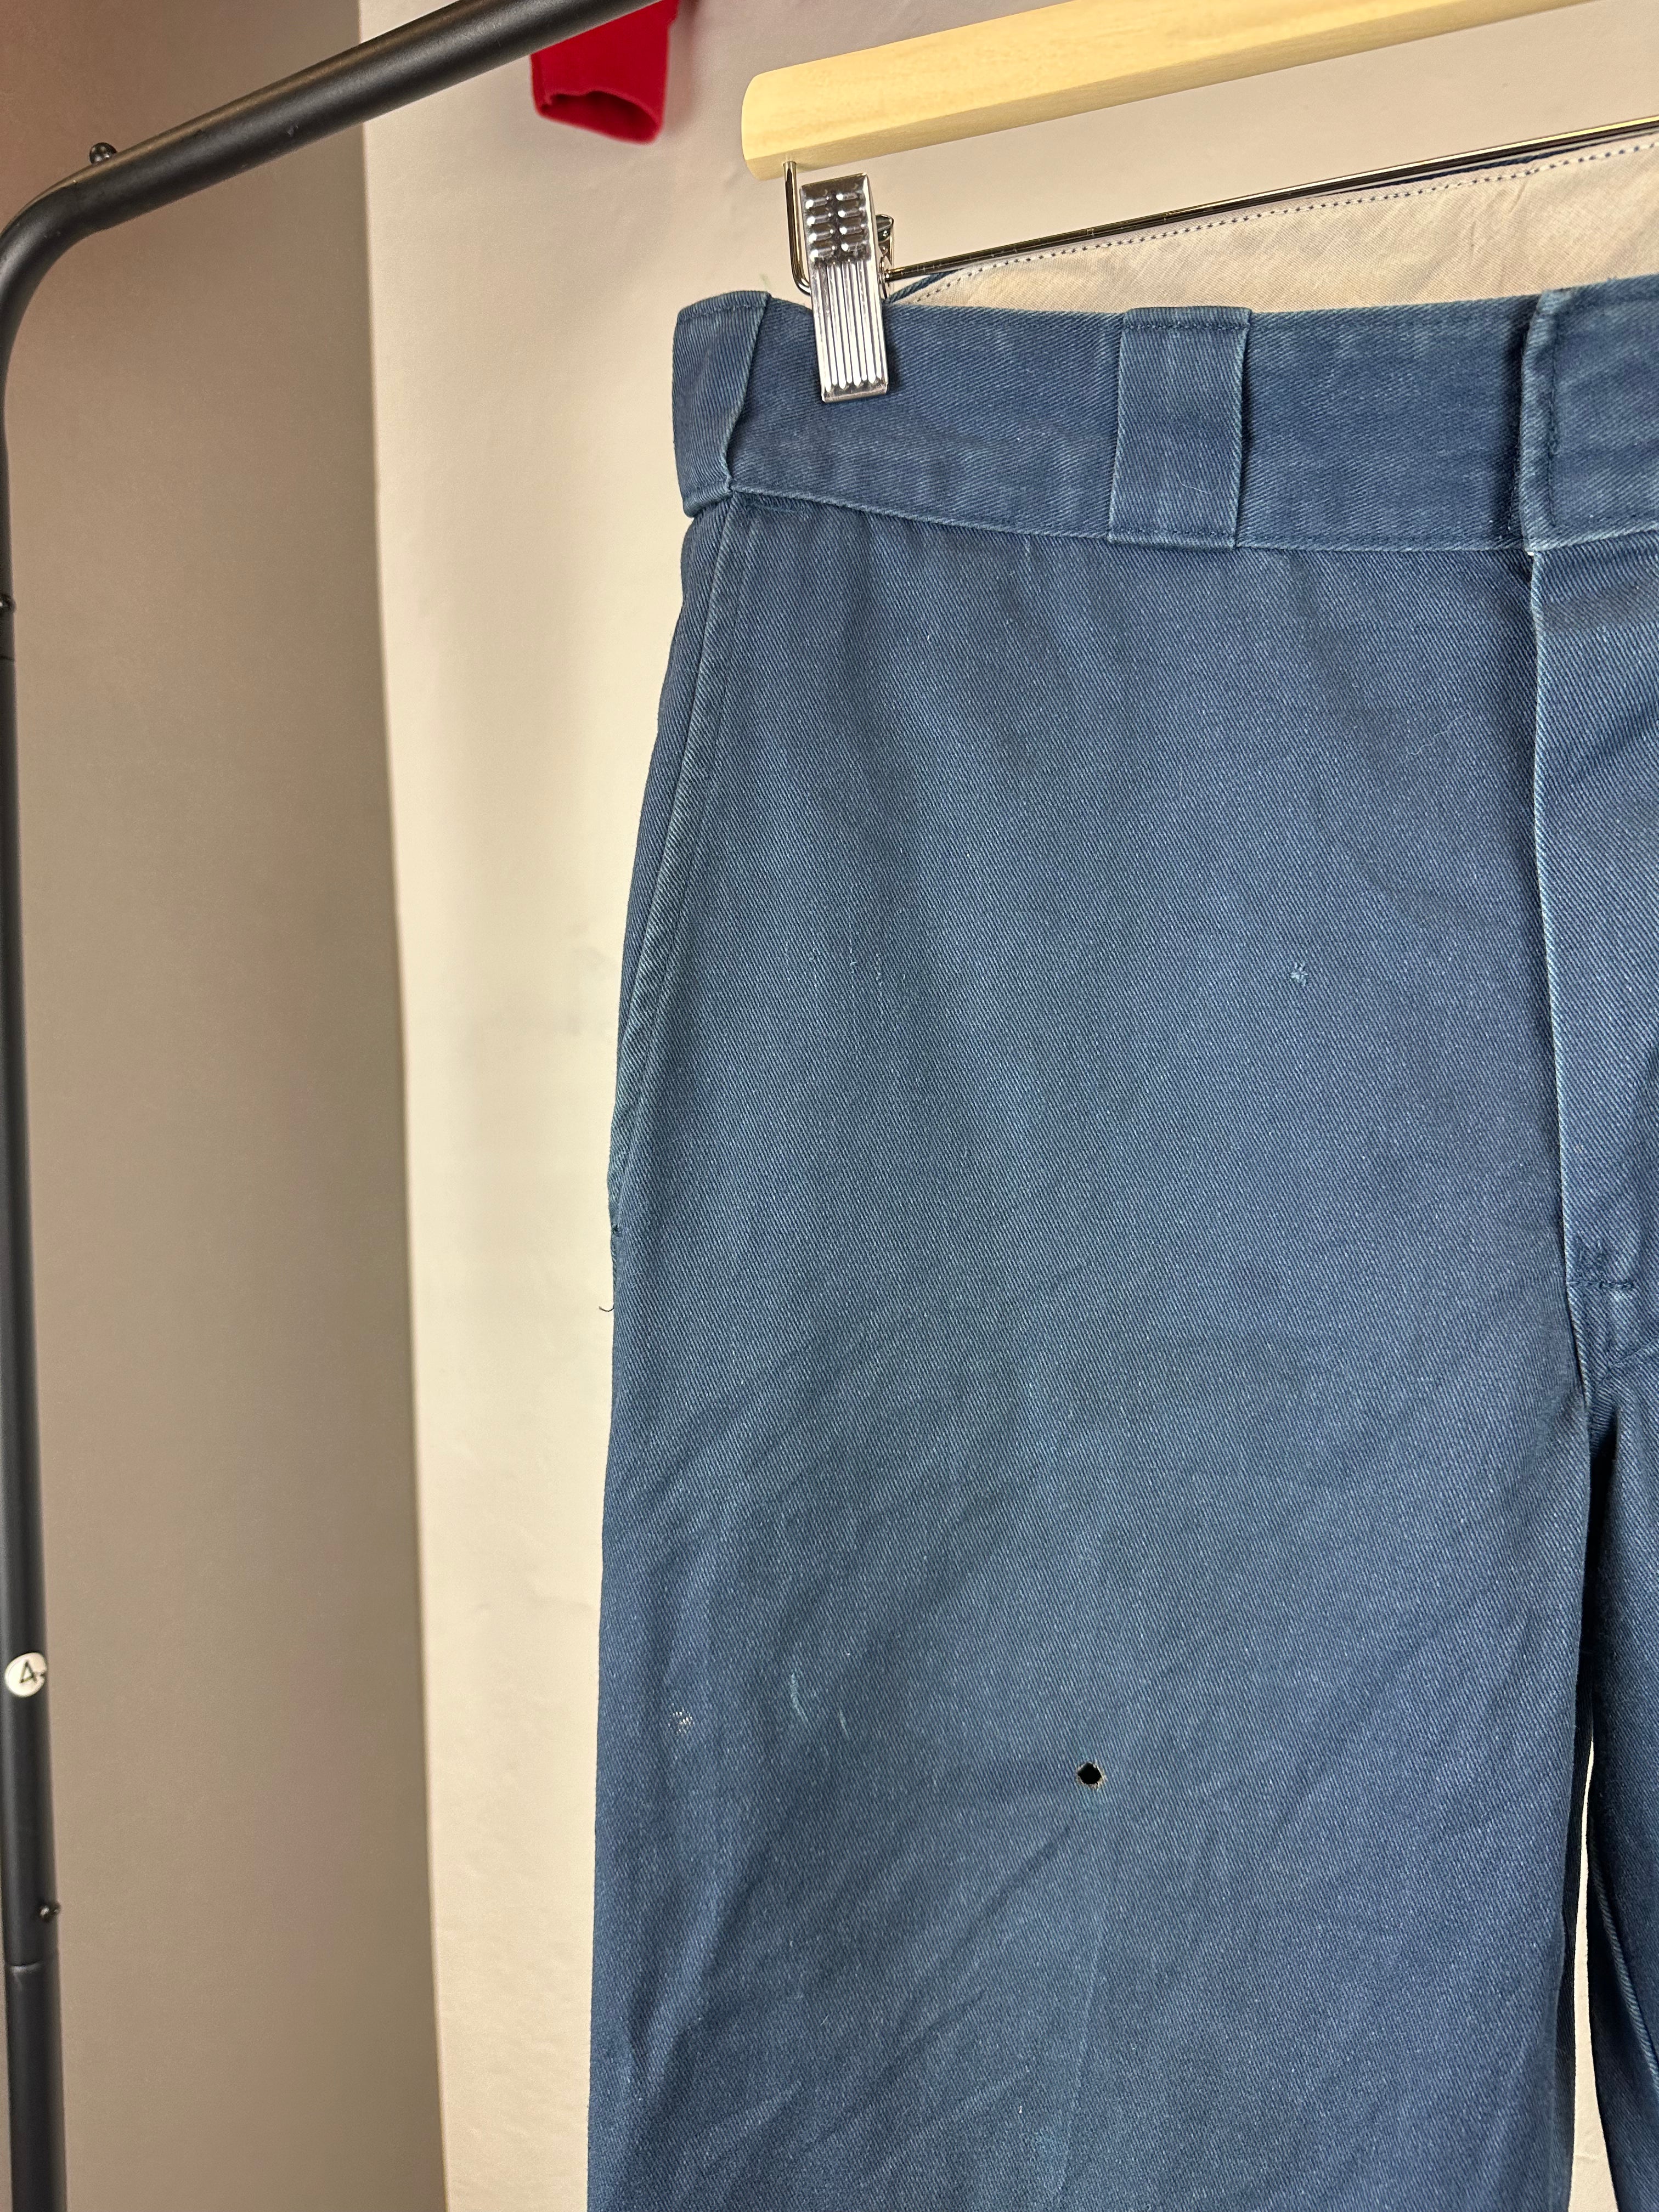 Vintage Dickies Loose Fit 30x30 Pants